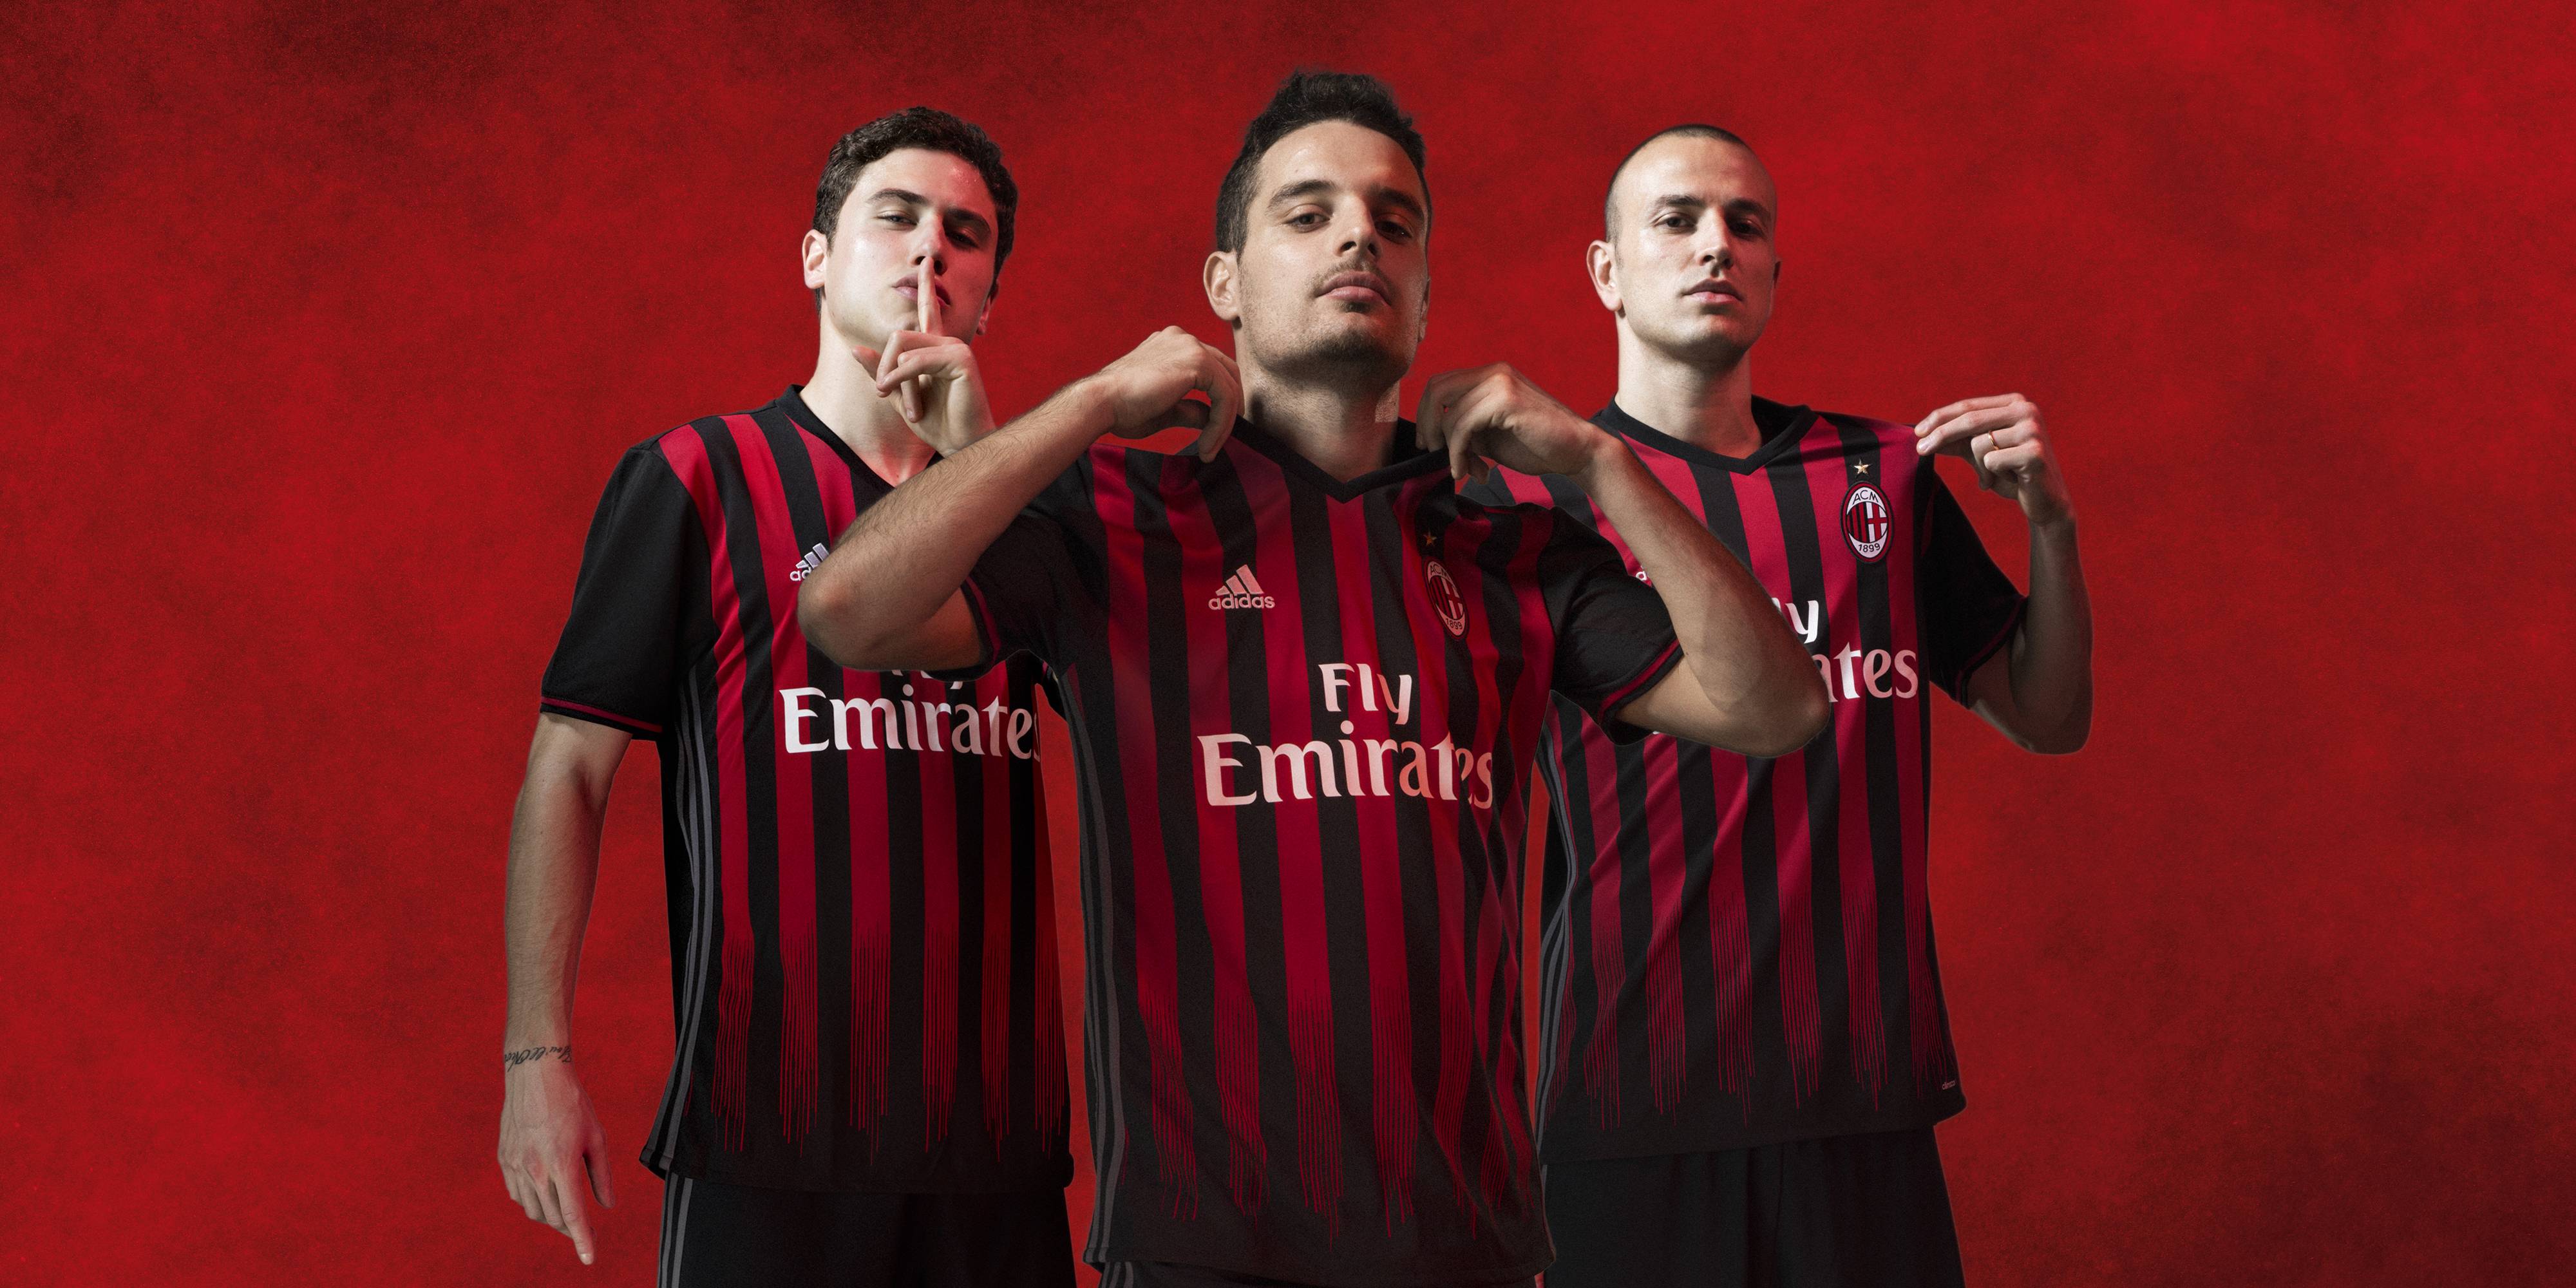 AC Milan mengakhiri kontrak sponsor dengan Adidas setelah hampir dua dekade.